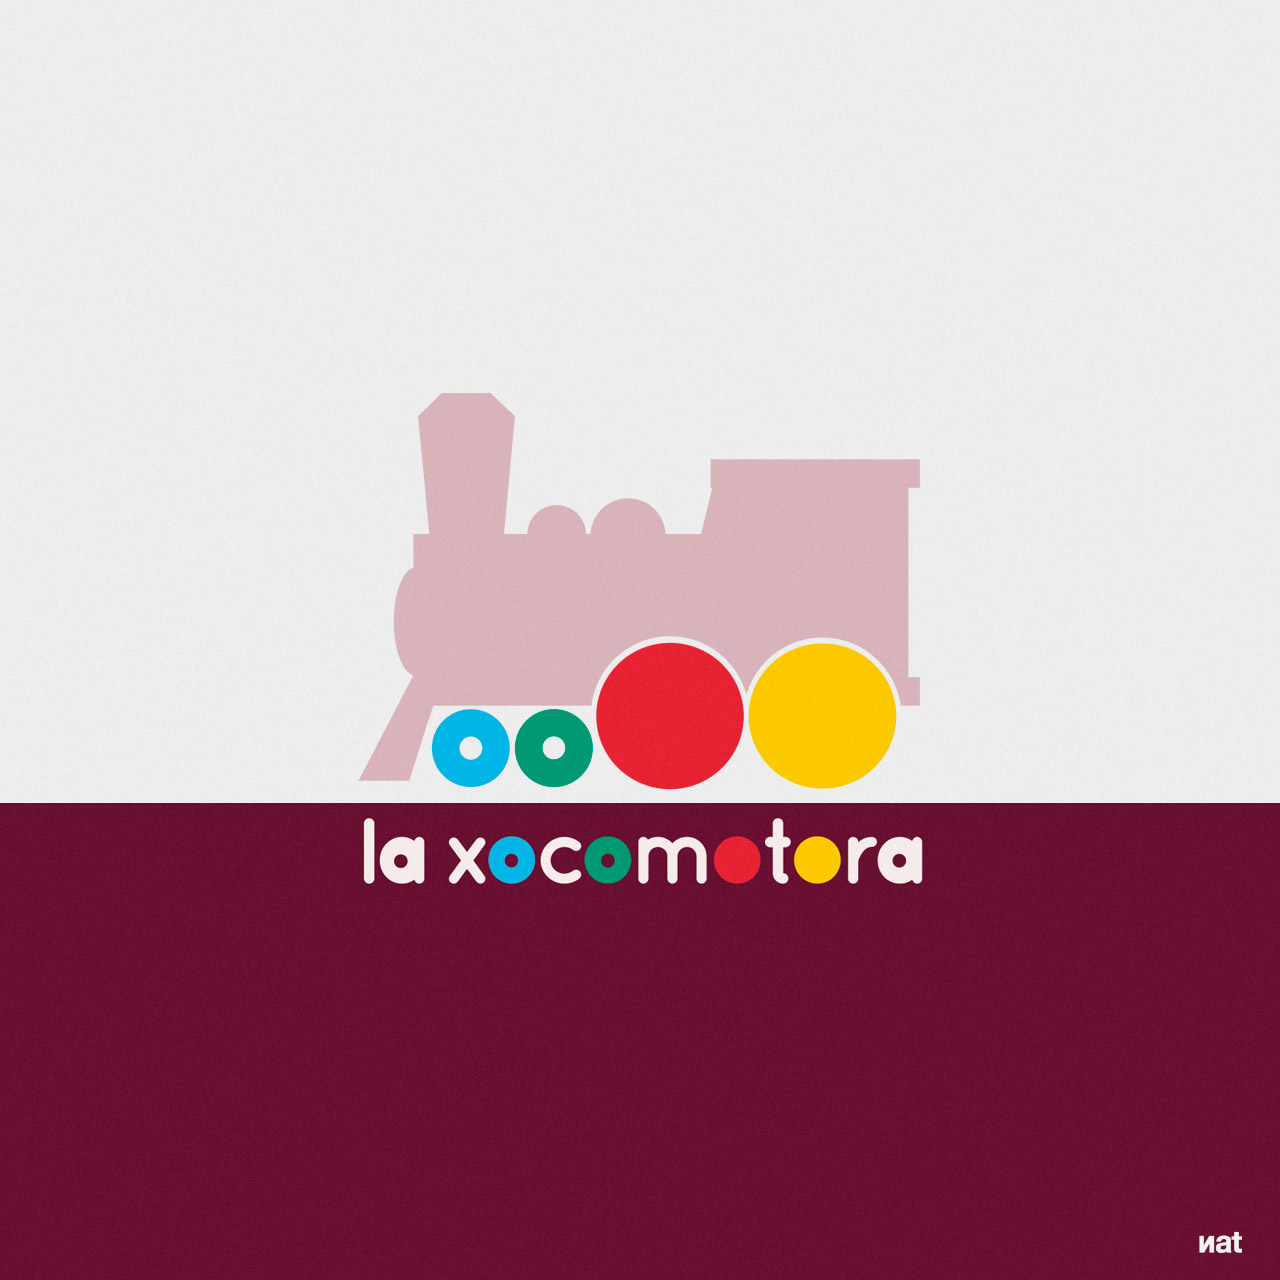 Diseño de logotipo y desarrollo de identidad corporativa de marca para el proyecto lúdico-infantil La Xocomotora.